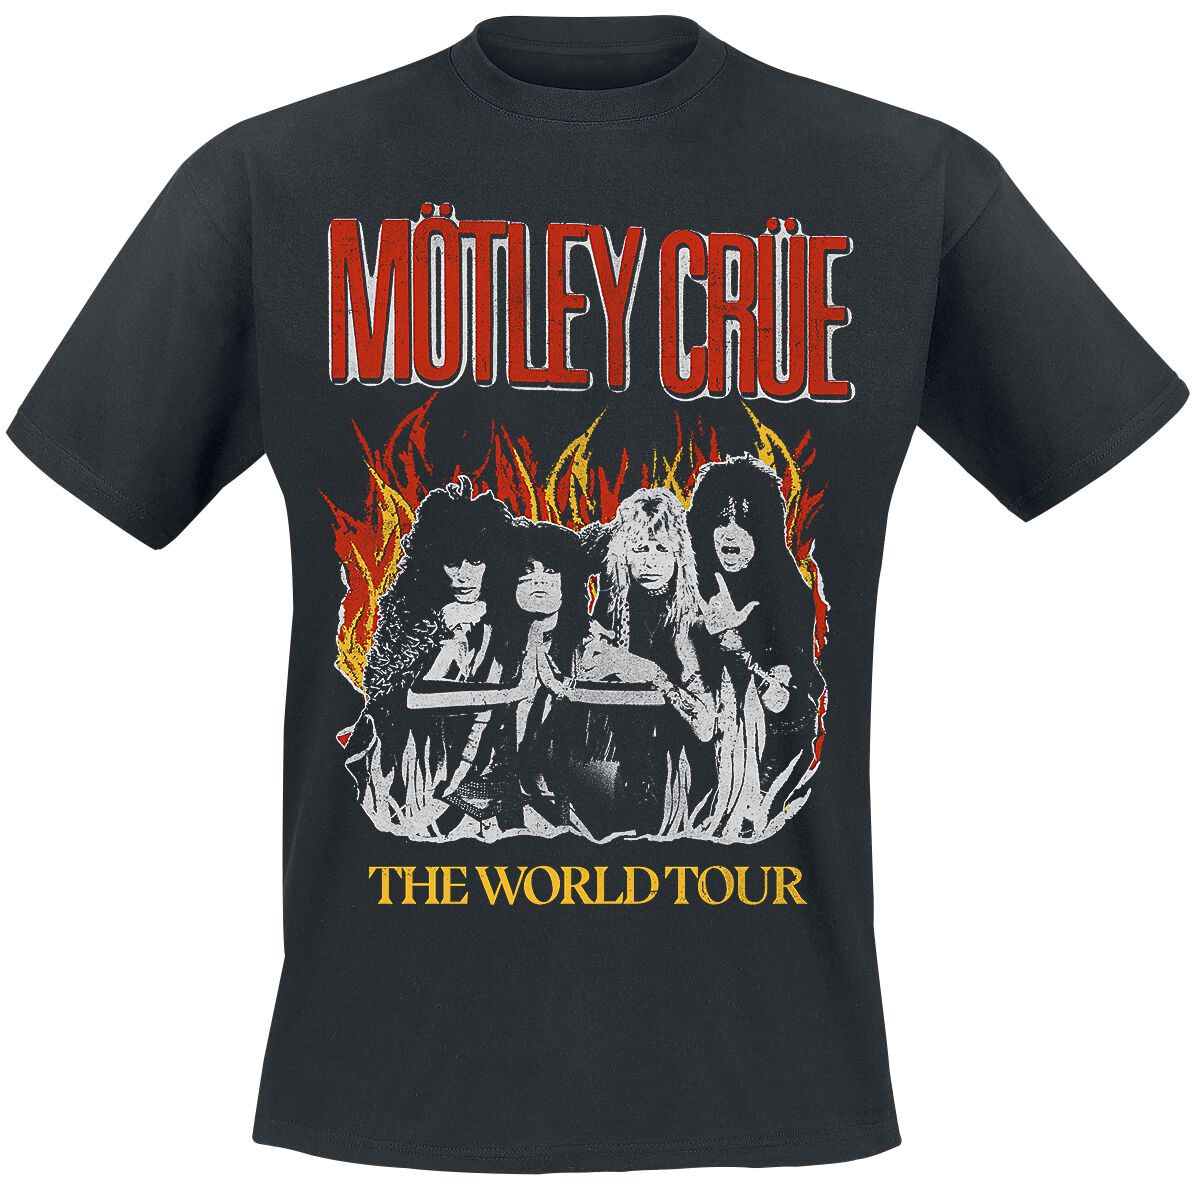 Mötley Crüe T-Shirt - Vintage World Tour Flames - M bis 4XL - für Männer - Größe M - schwarz  - Lizenziertes Merchandise!